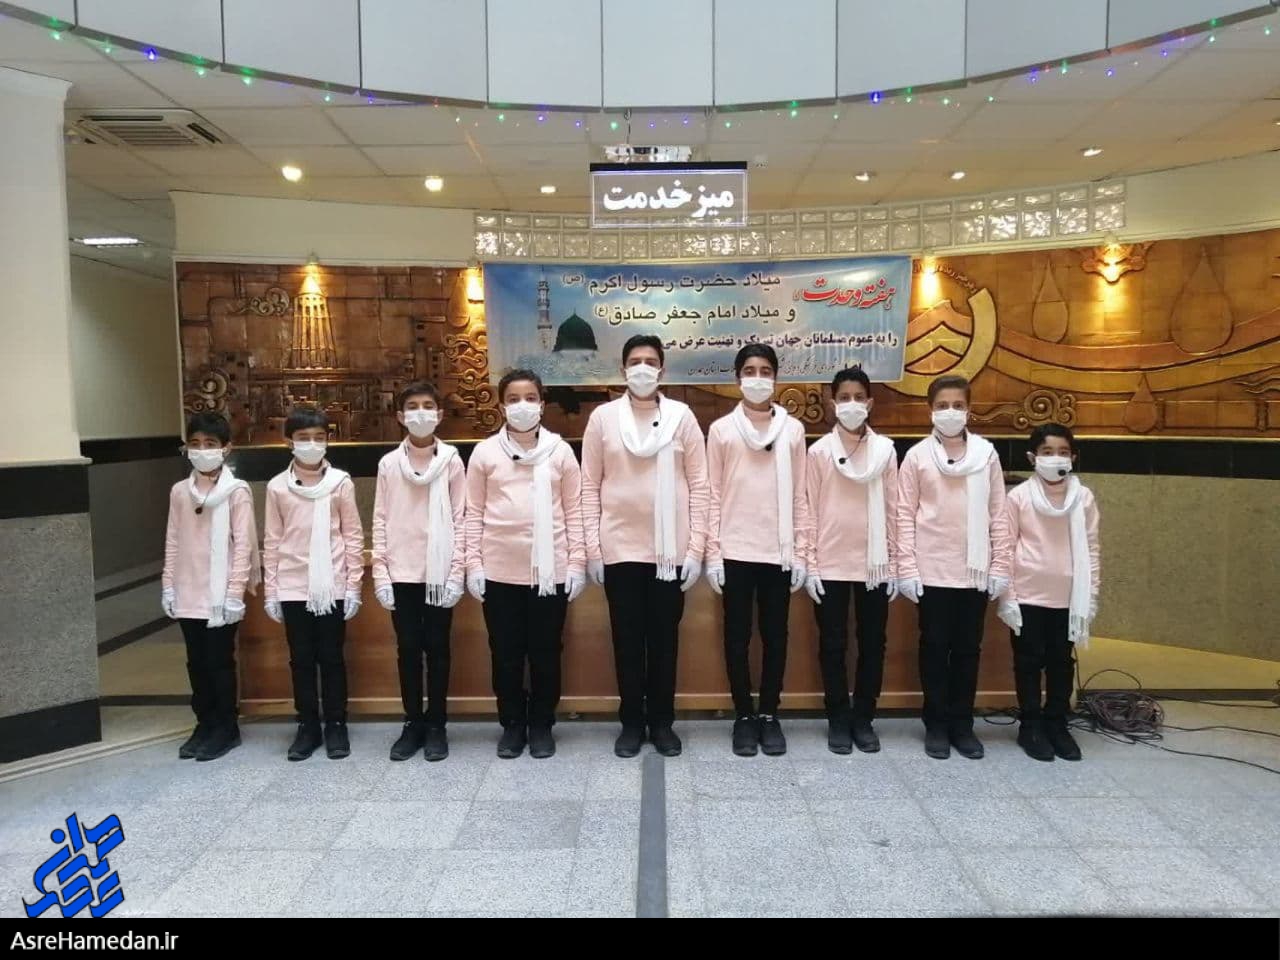 اجرای گروه سرود بسیجیان پایگاه مسجد النبی در مناطق مختلف شهر همدان+ تصاویر